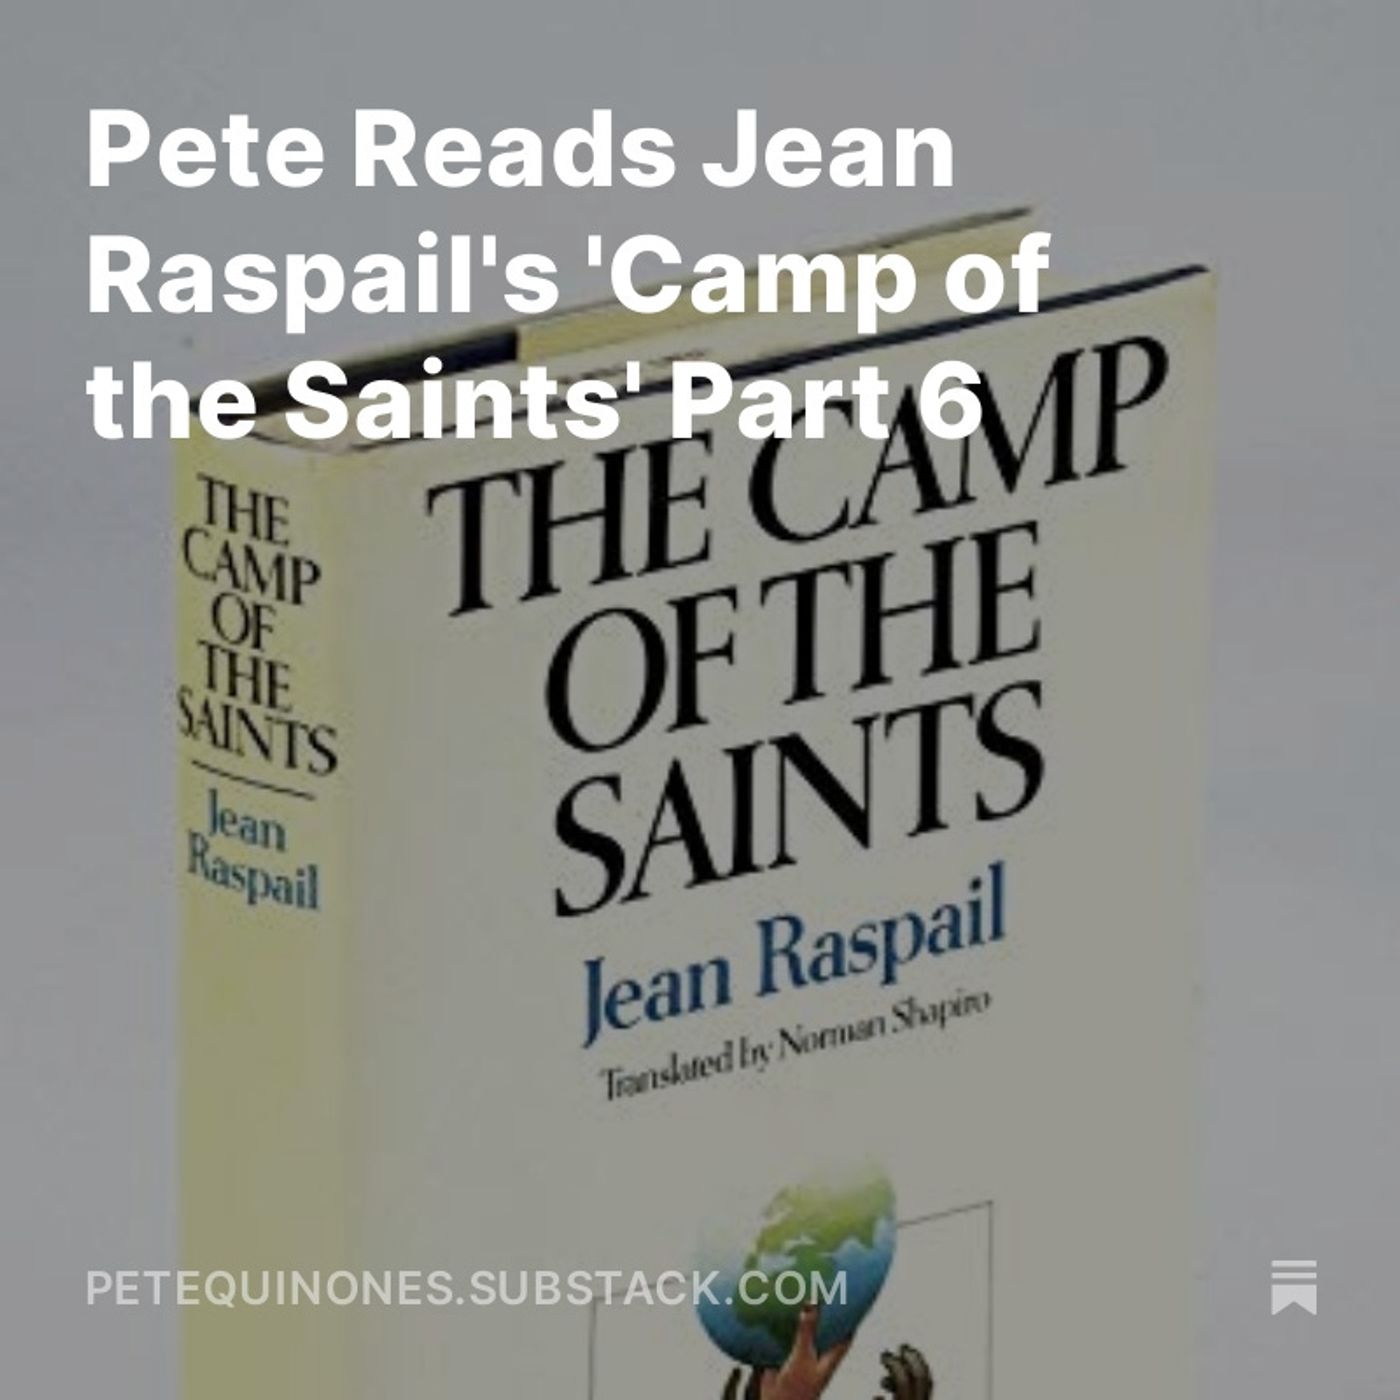 Pete Reads Jean Raspail's 'Camp of the Saints' Part 6